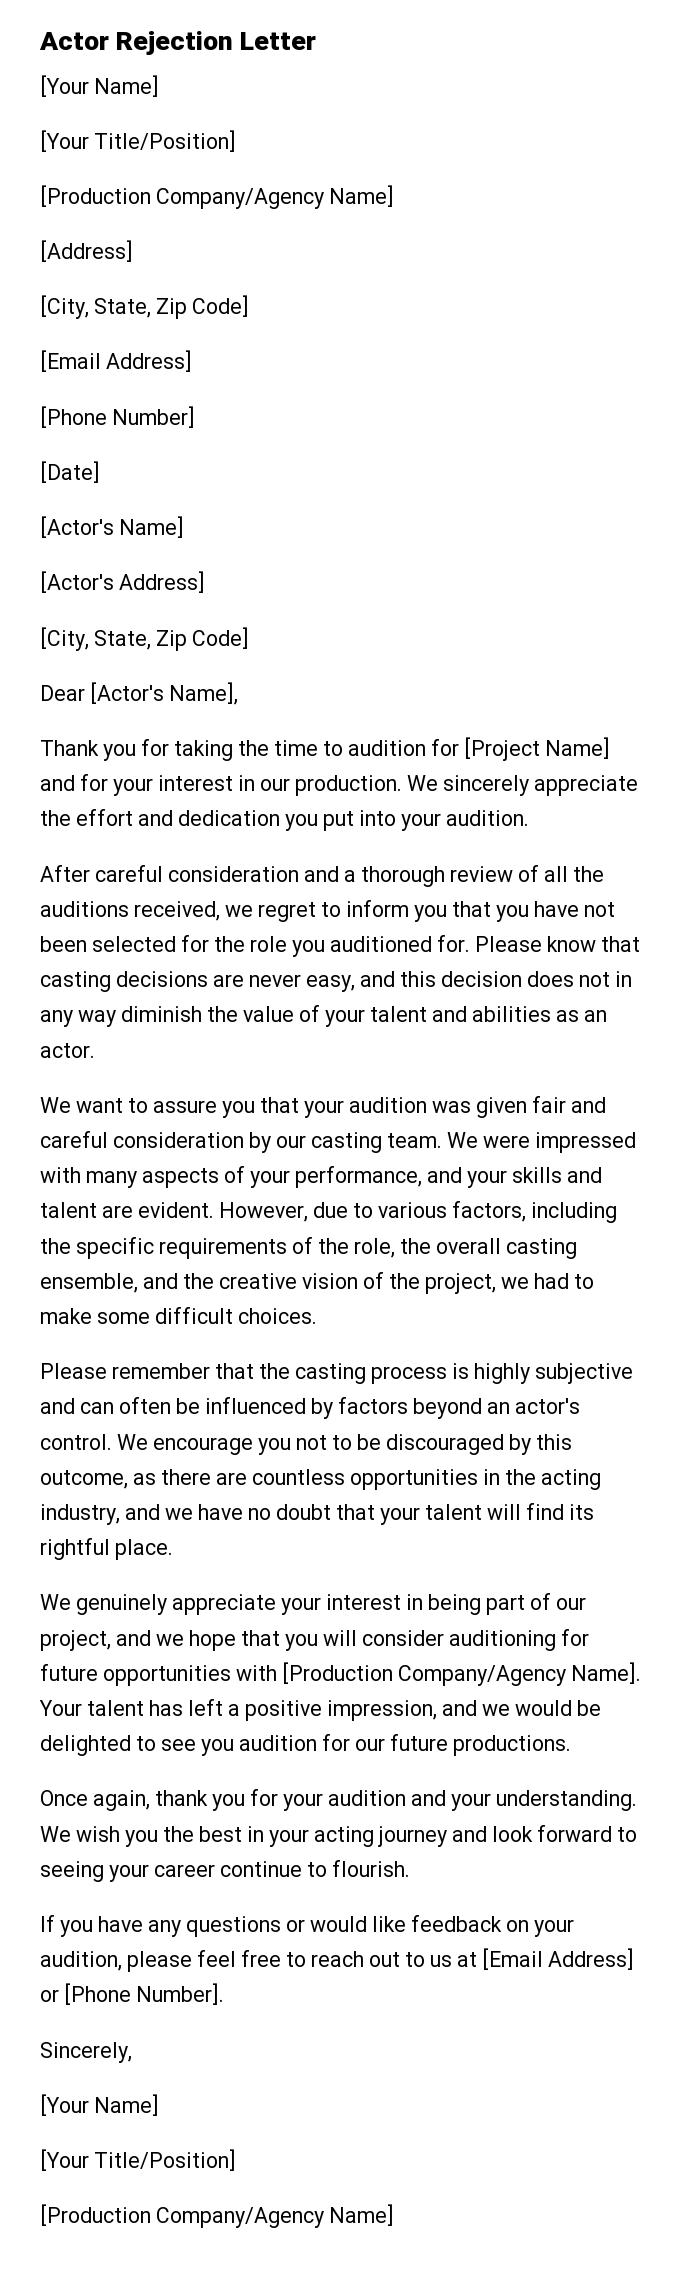 Actor Rejection Letter